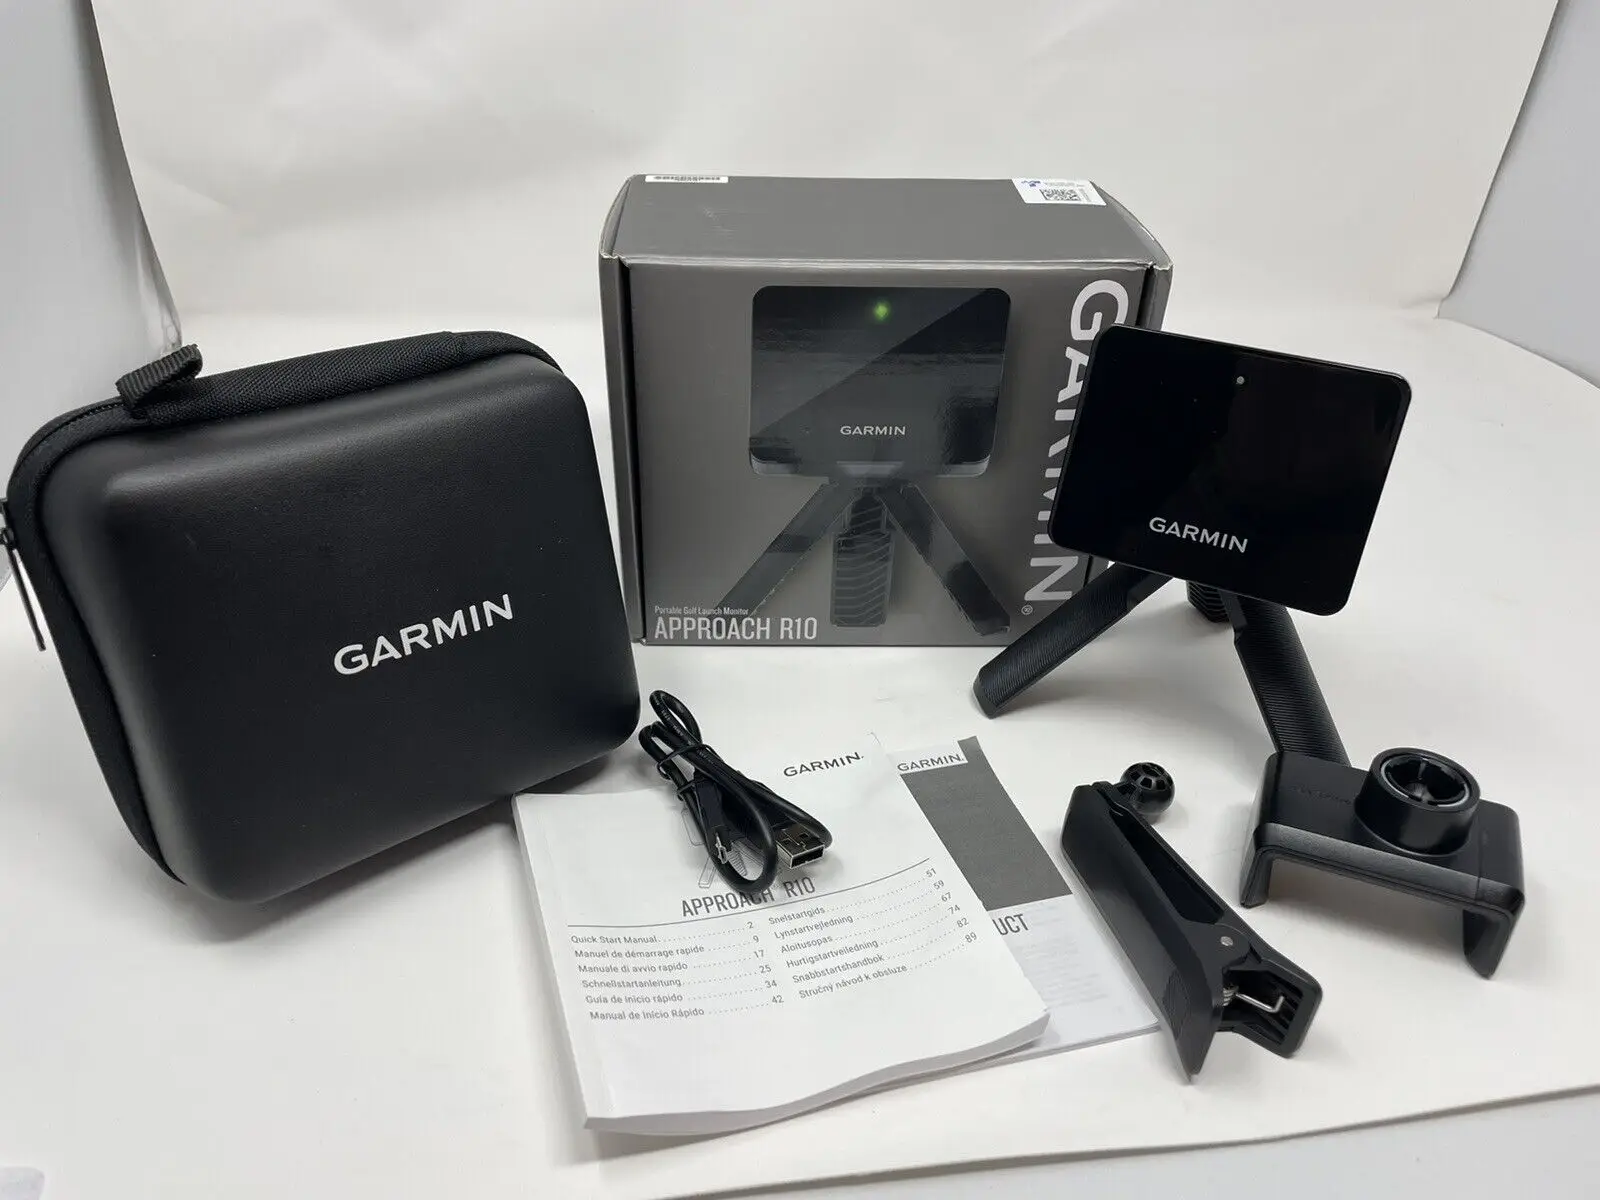 

Buy 2 get 1 free GARMIN Approach R10 Launch Monitor